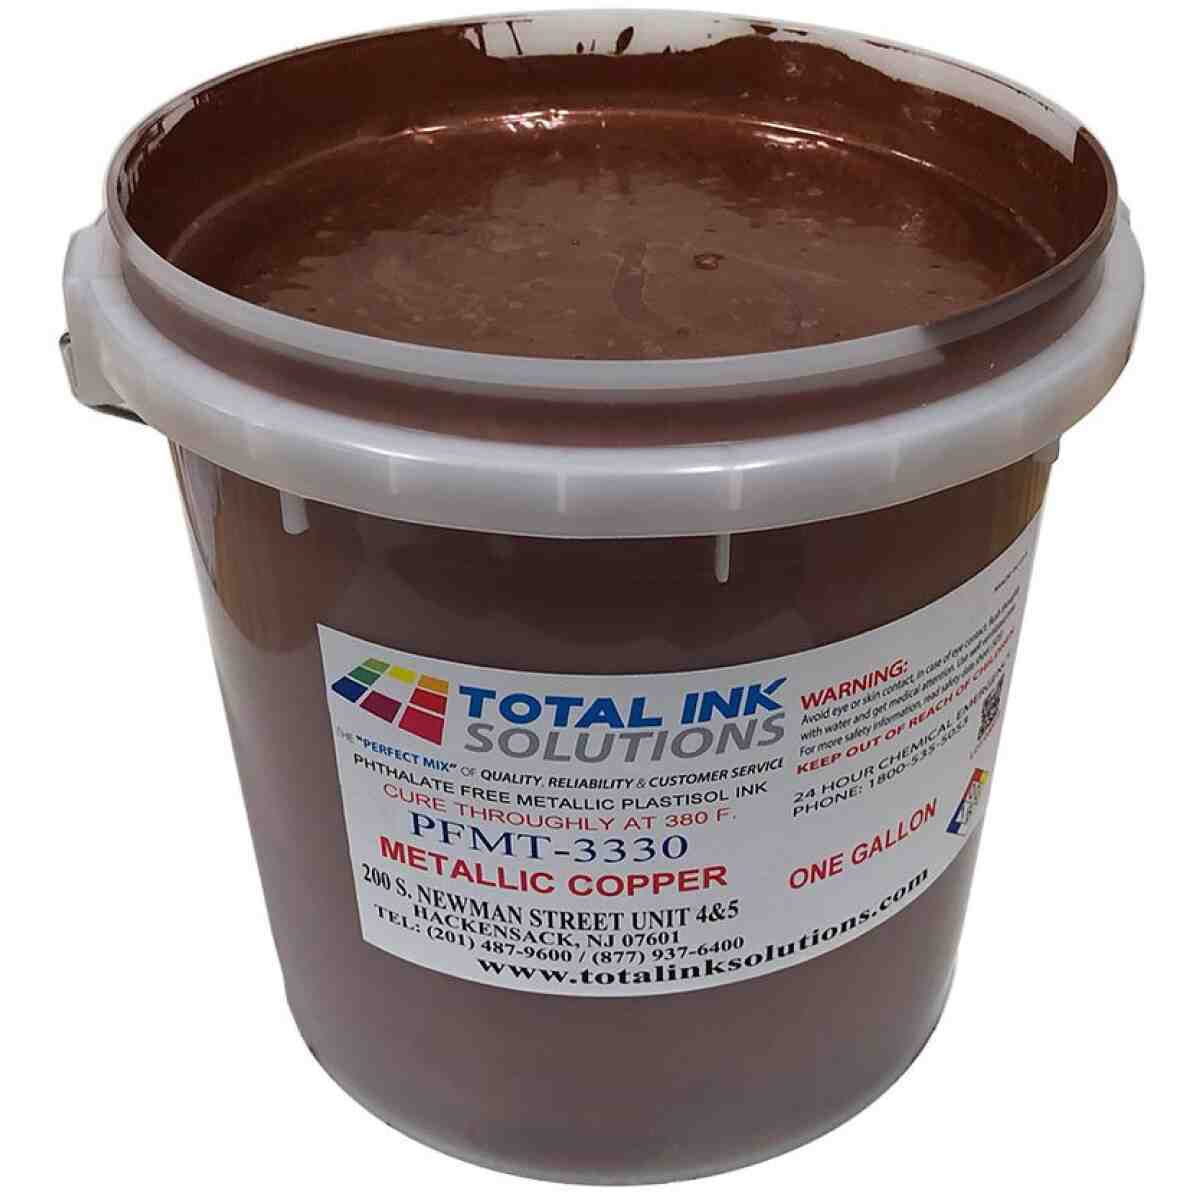 Dark Copper - Metallic Plastisol Ink TOTAL INK SOLUTIONS®